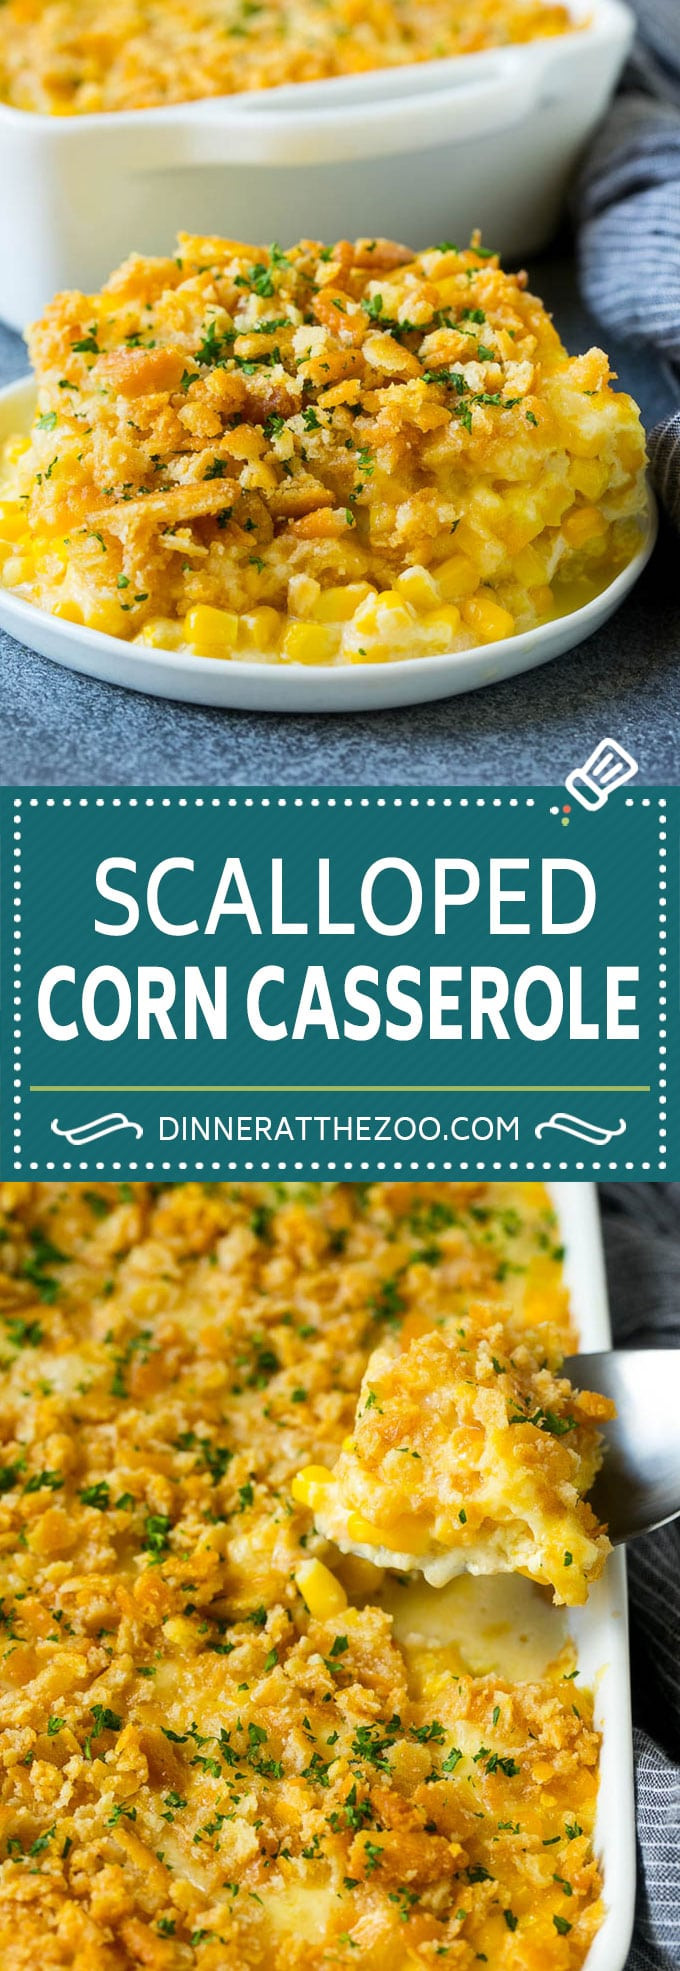 Scalloped Corn Casserole Recipes
 Scalloped Corn Casserole Dinner at the Zoo